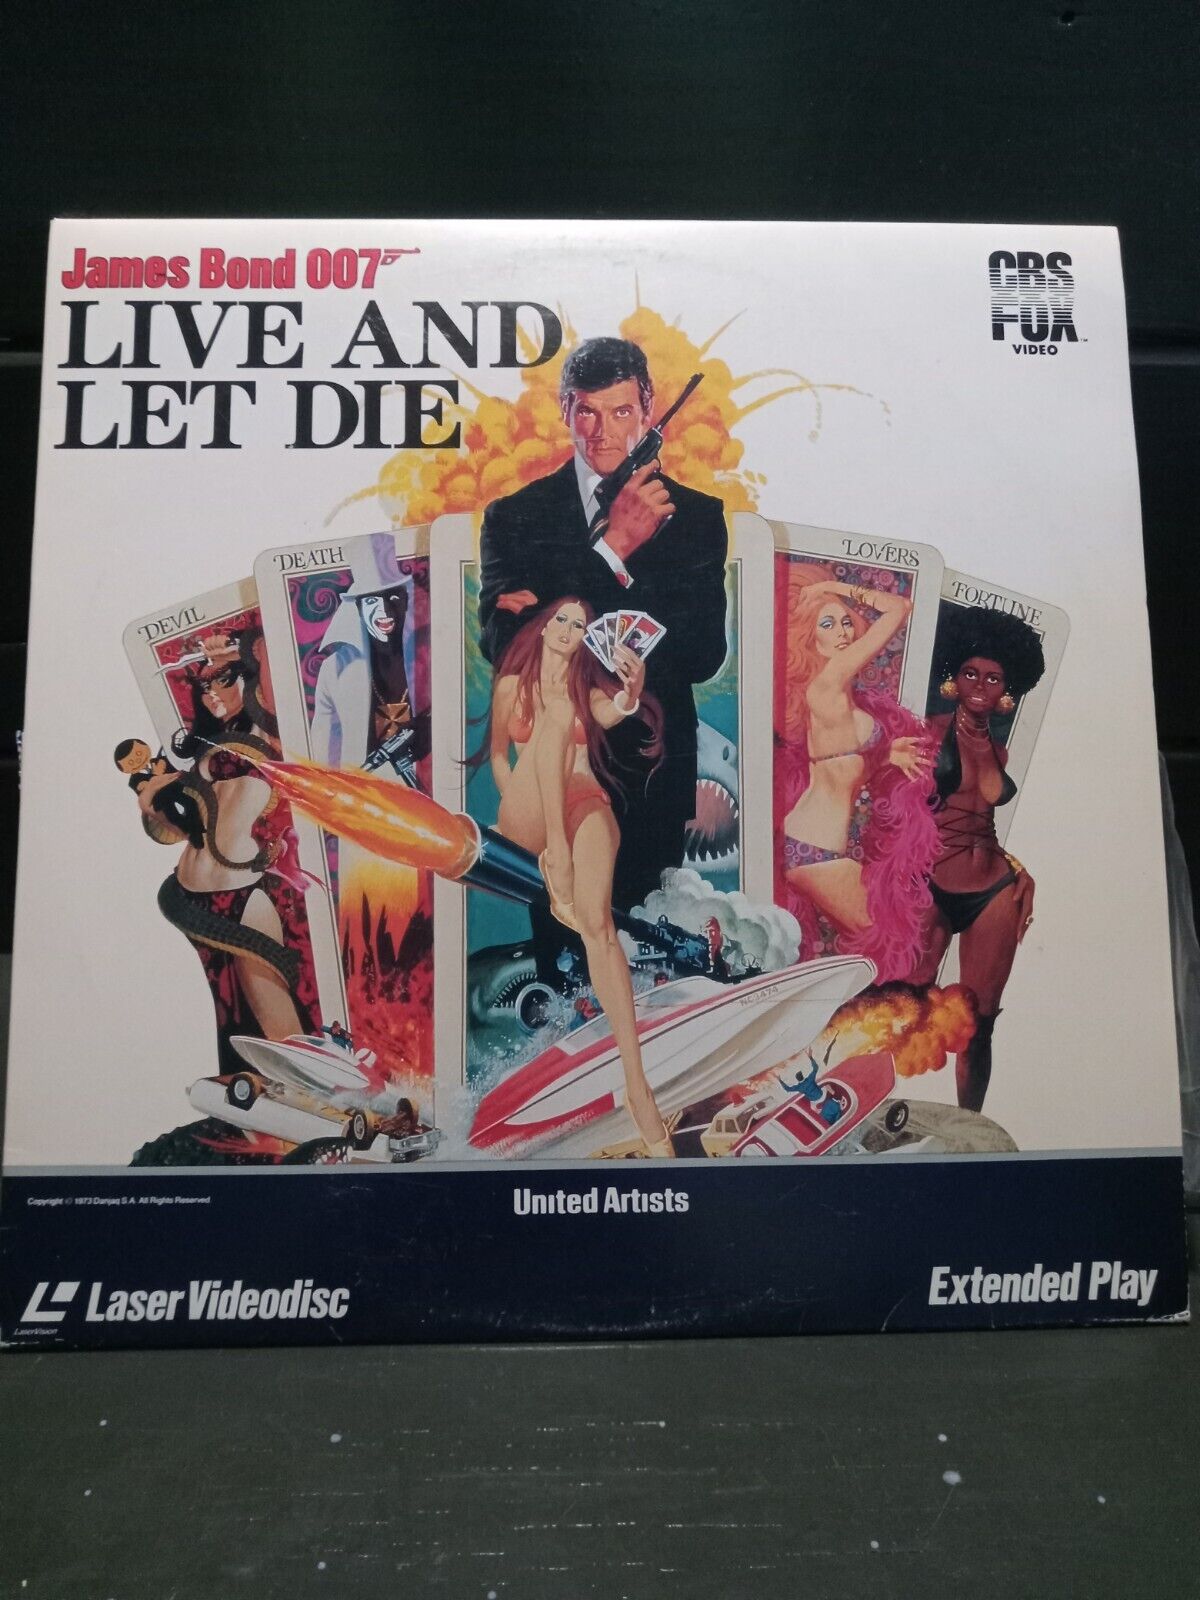 James Bond Films: Live And Let Die - Darkside Records